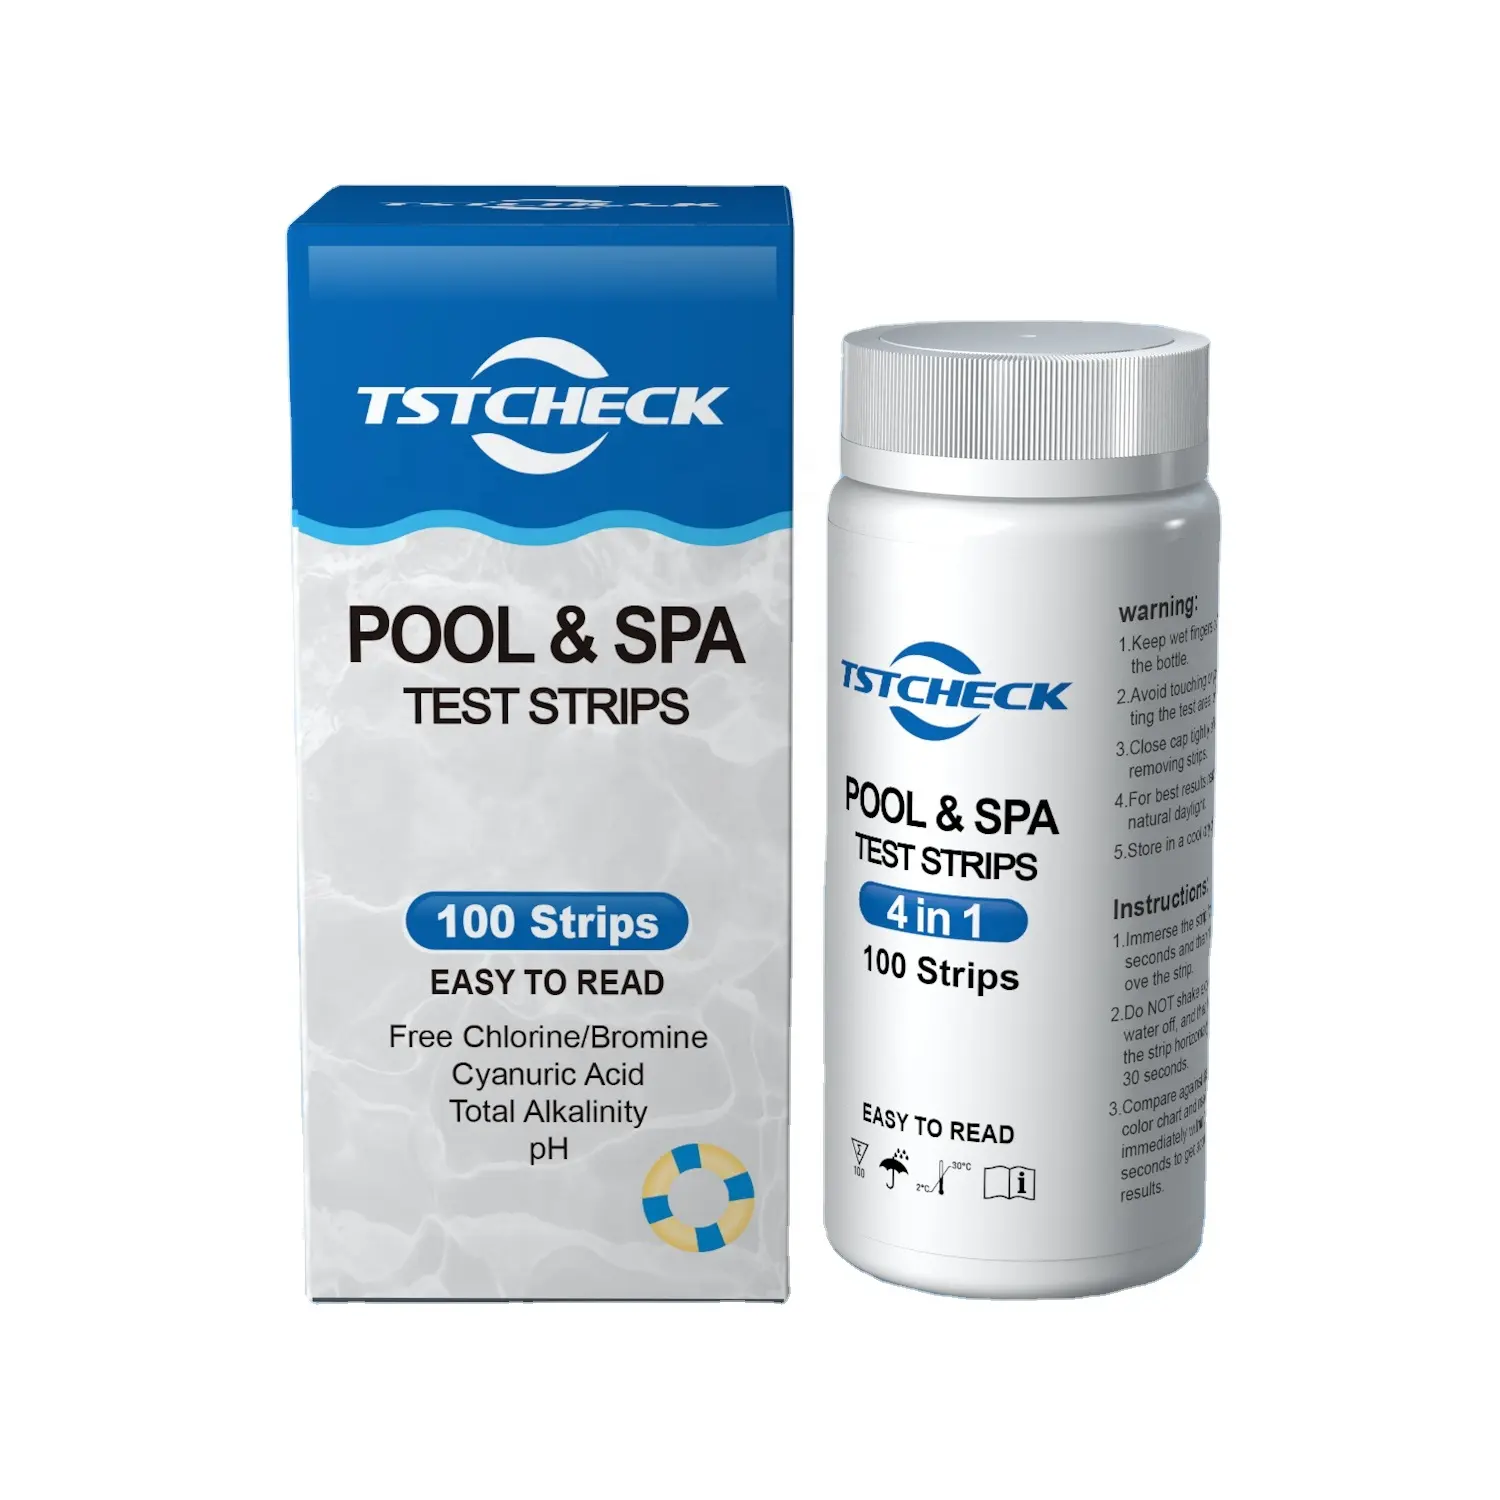 Akvaryum test kitleri spa yüzme havuzu test şeritleri 4 in1 pH serbest klor toplam alkalinite siyanürik asit test kitleri